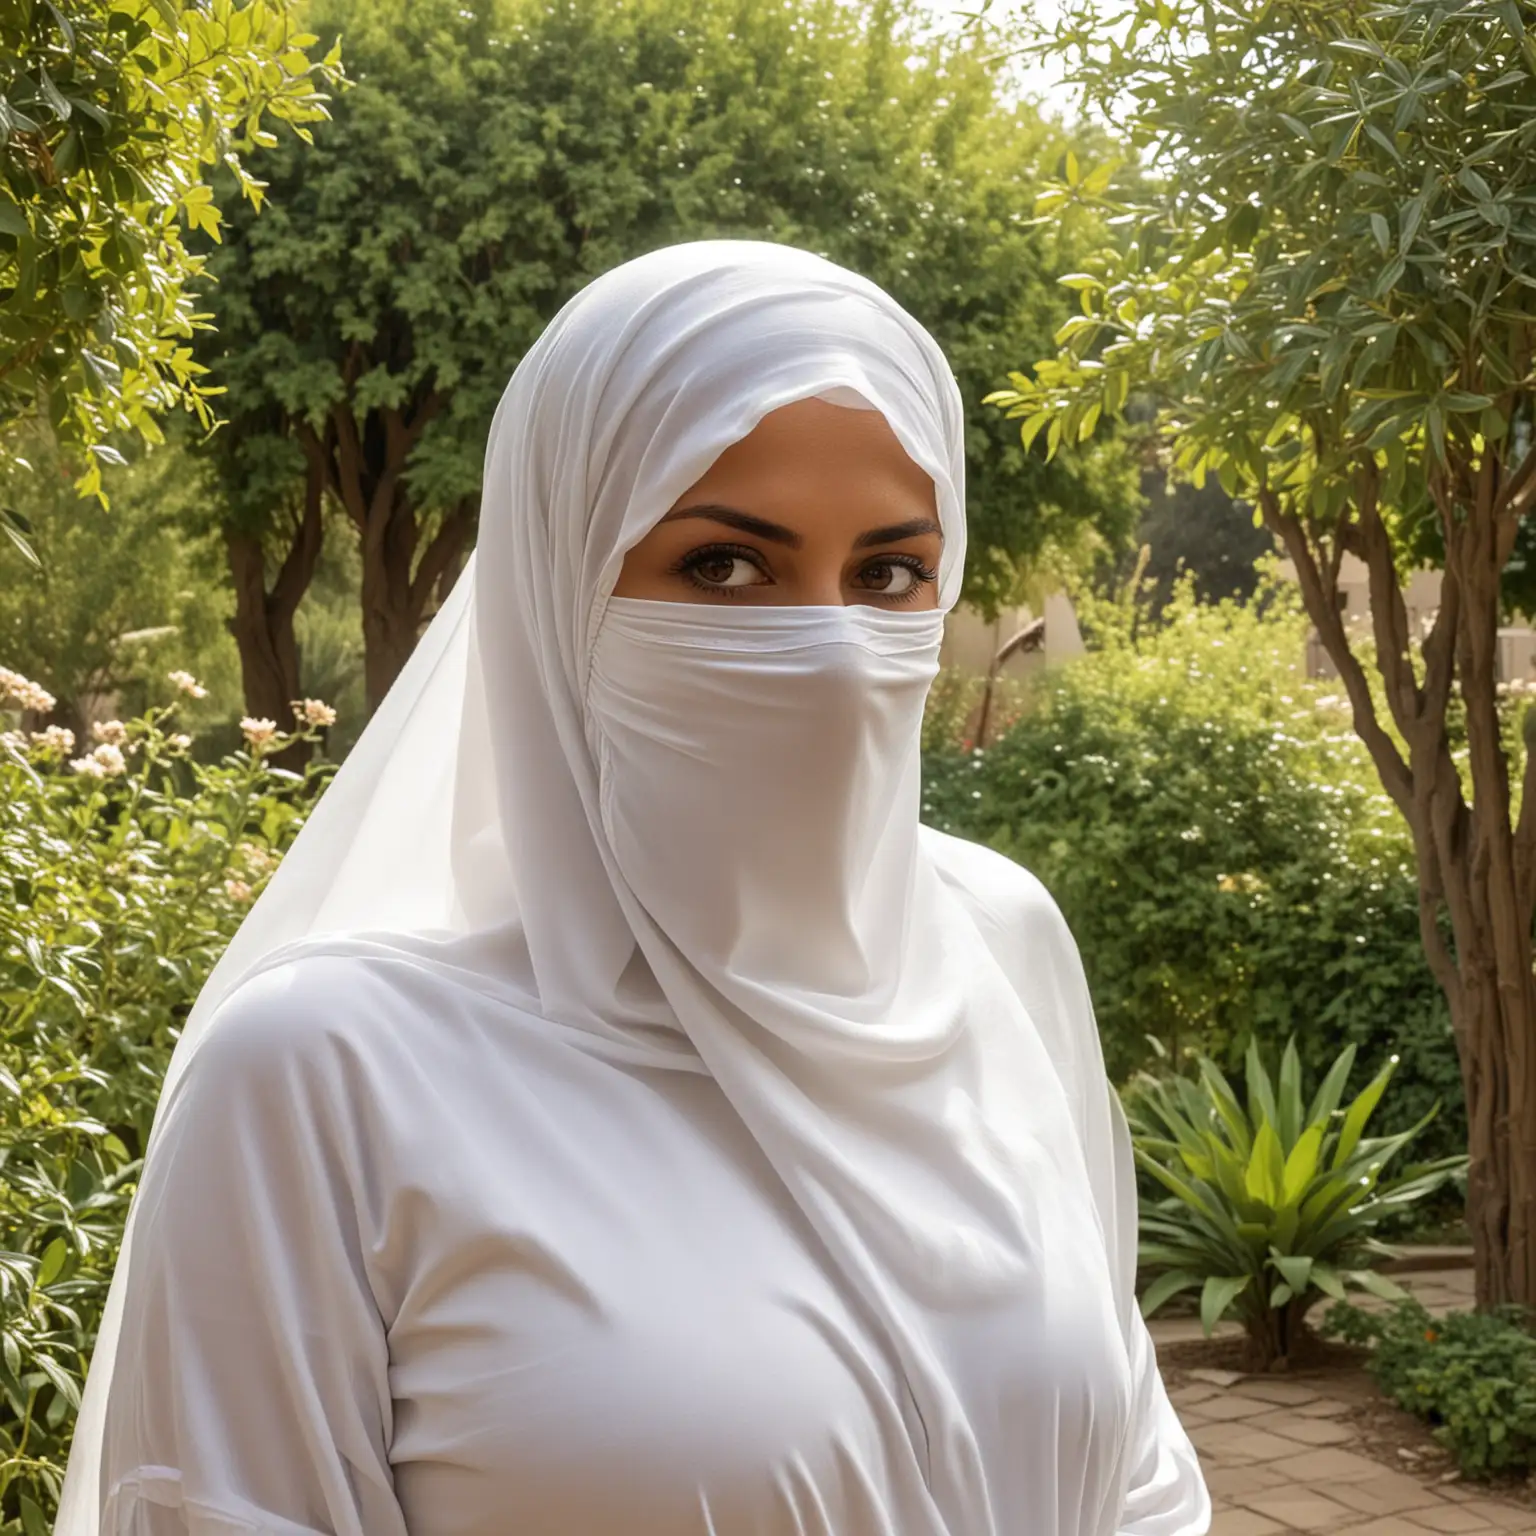 Elegant Iranian Woman in Stunning Burqa Amidst Garden Splendor